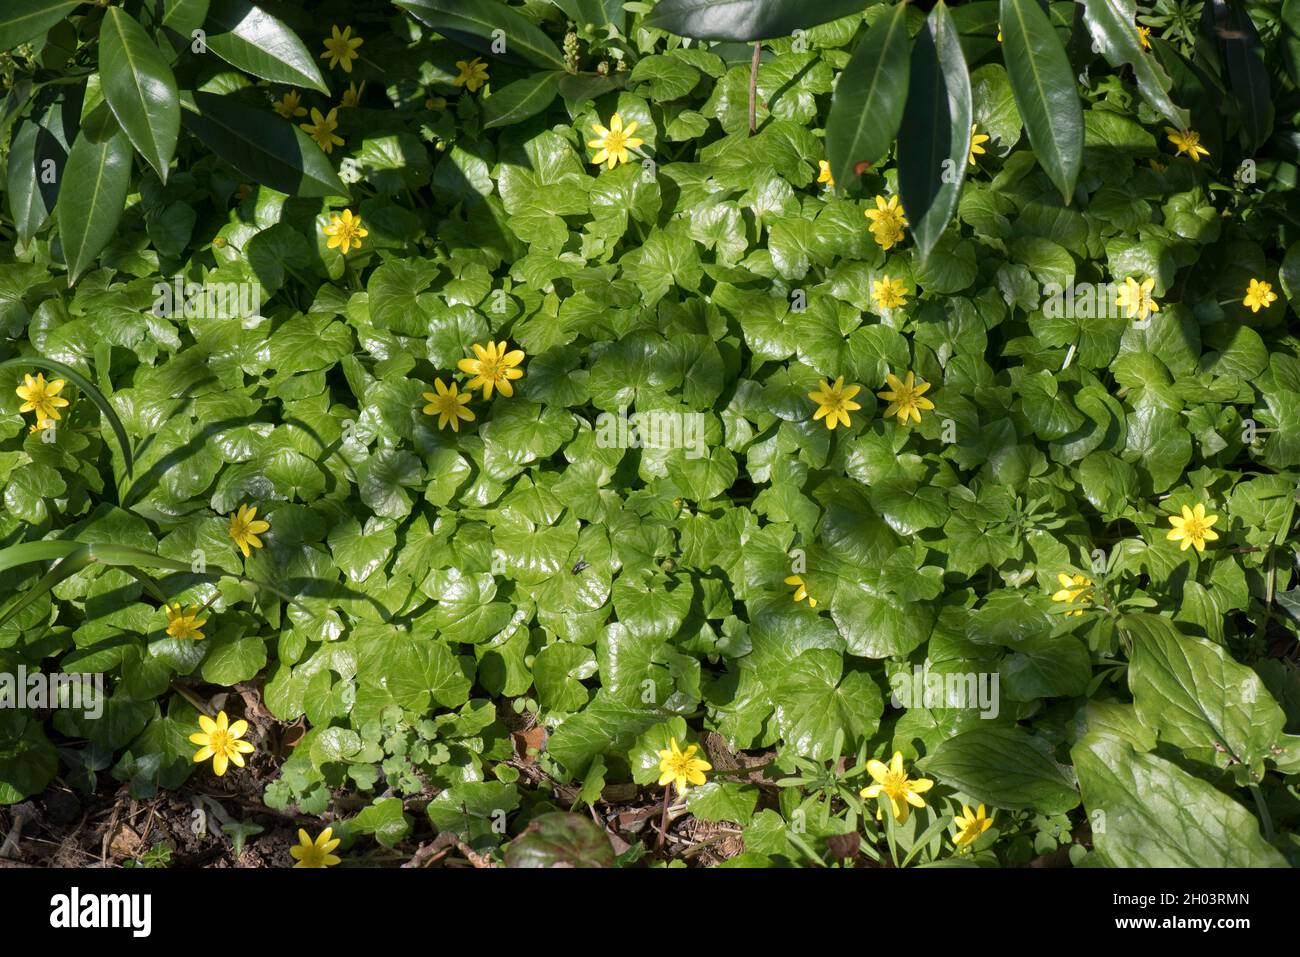 Plante jaune de célandine (Ficaria verna), de type buttercup, floraison au début du printemps, Berkshire, mars Banque D'Images